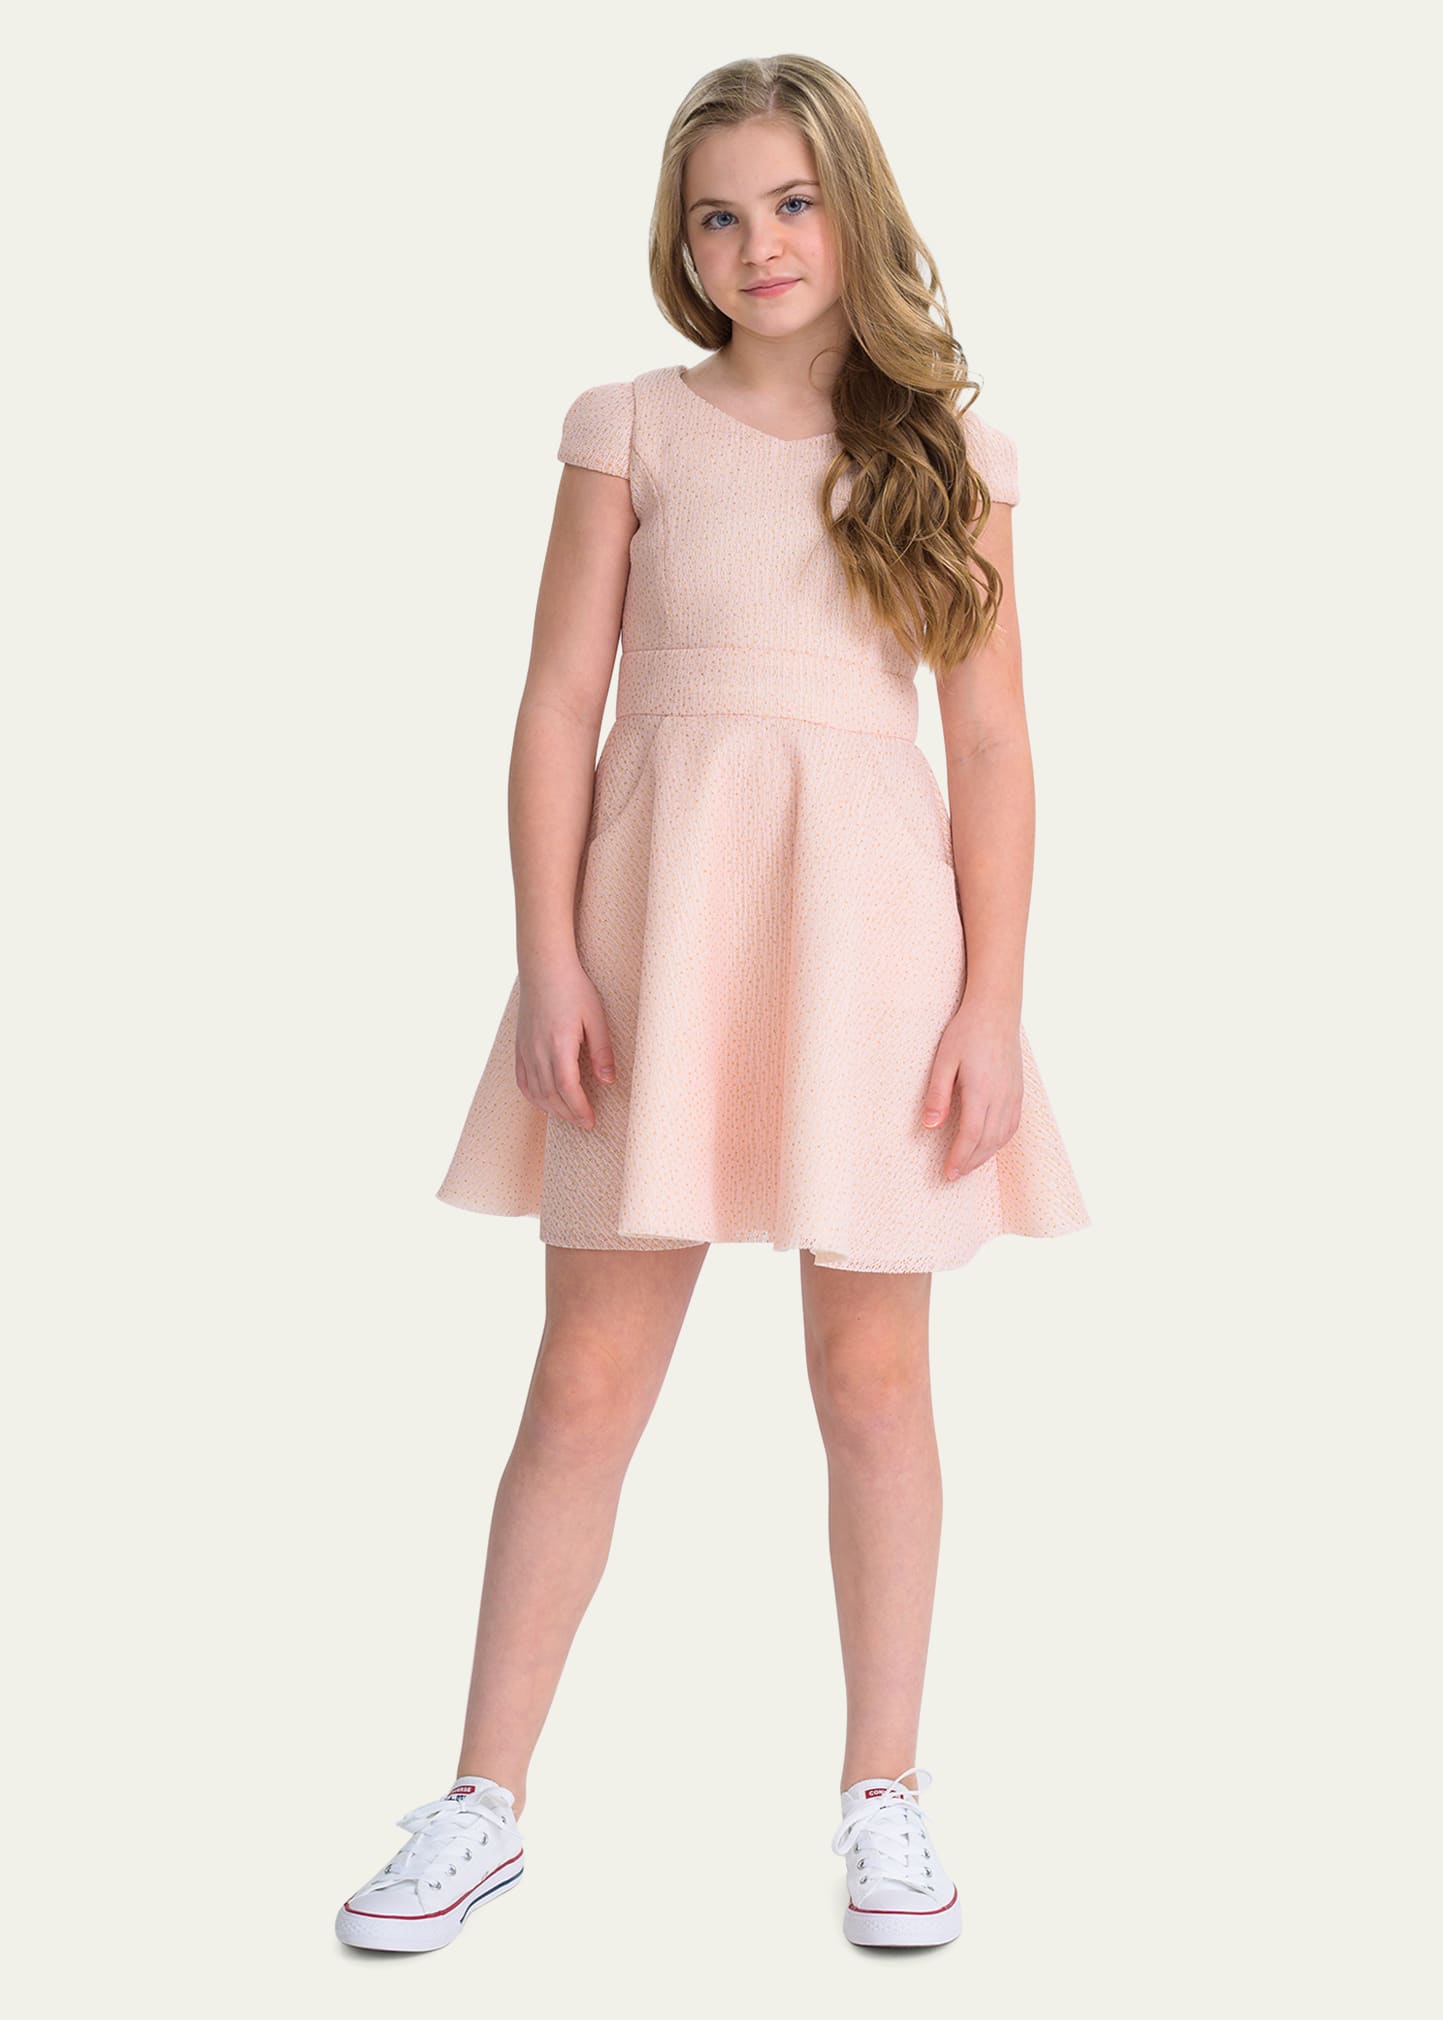 Zoe Kids' Girl's Valerie Short-sleeve Inside-pocket Dress In Pink